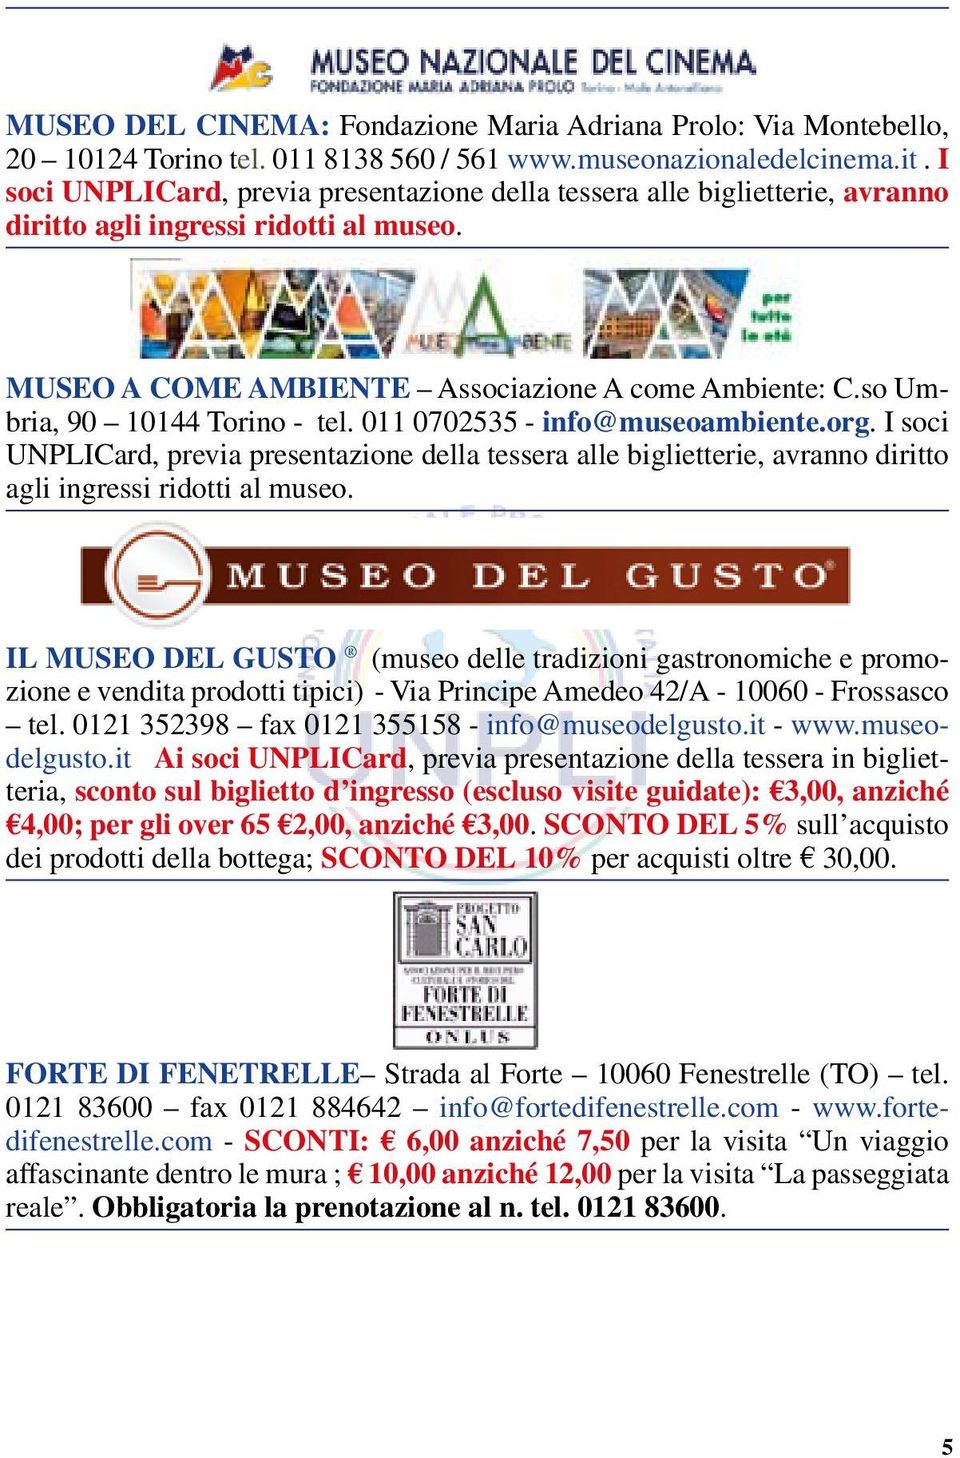 so Umbria, 90 10144 Torino - tel. 011 0702535 - info@museoambiente.org. I soci UNPLICard, previa presentazione della tessera alle biglietterie, avranno diritto agli ingressi ridotti al museo.